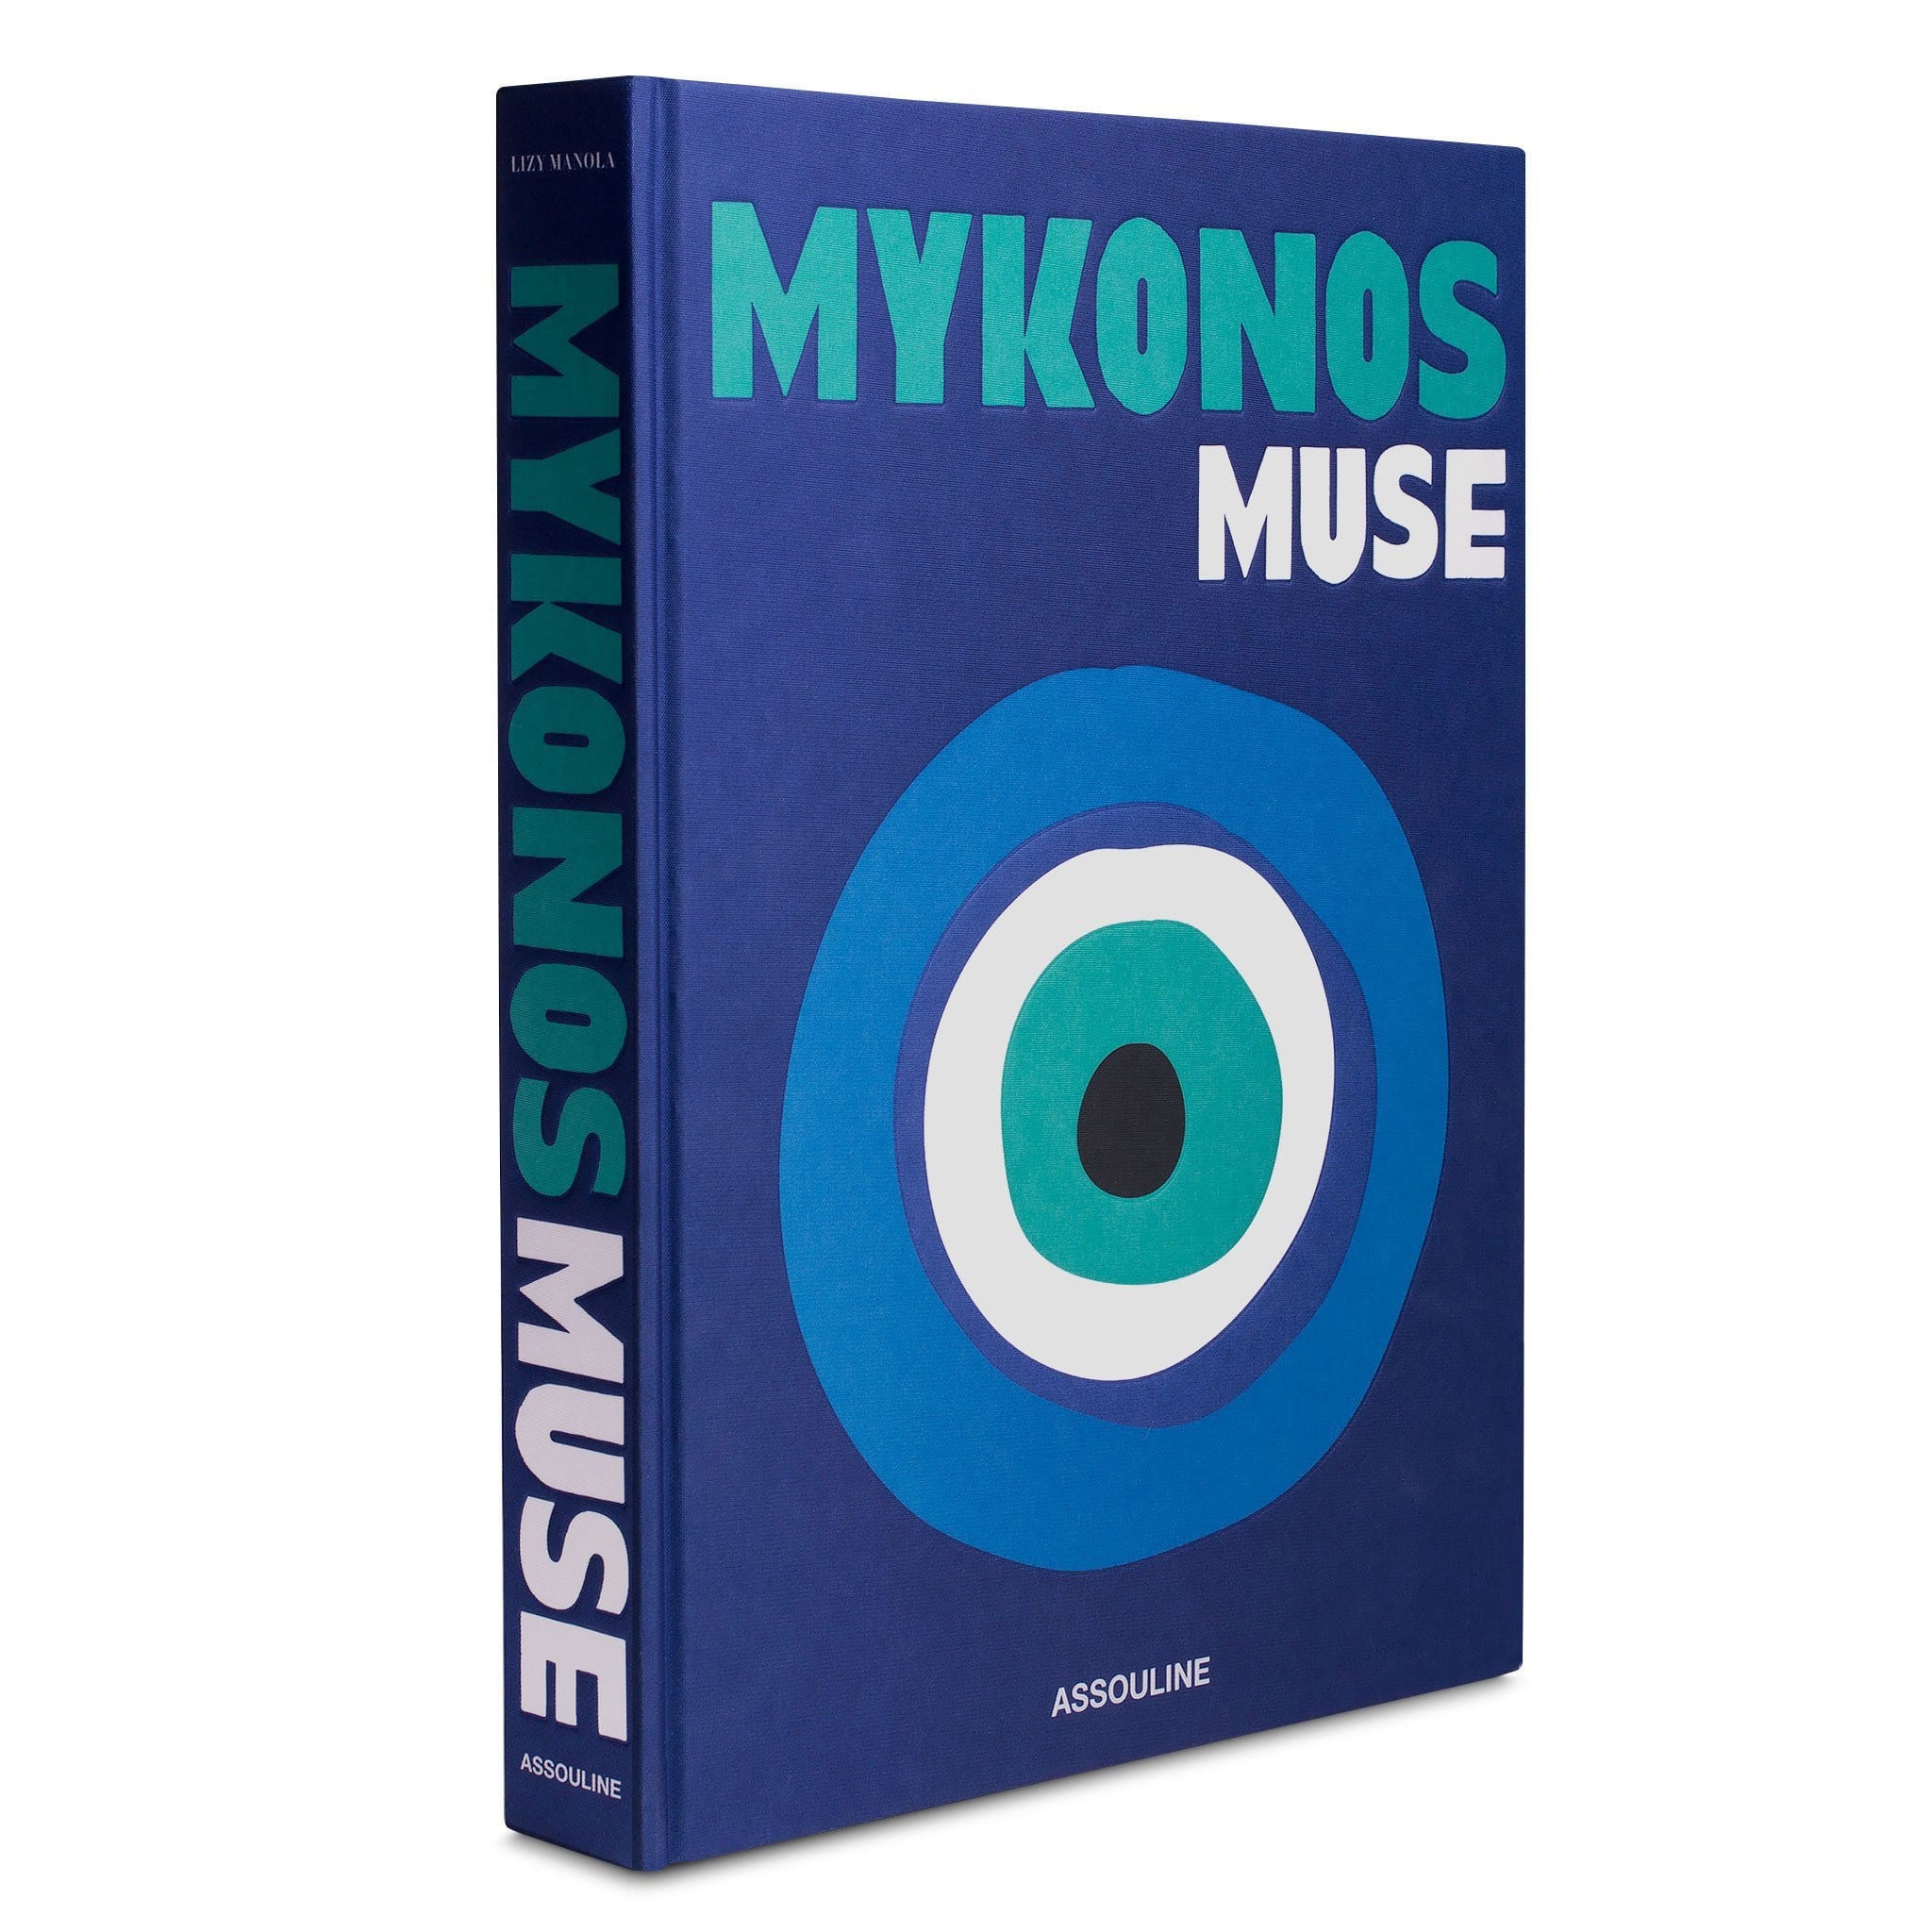 Asnouline Mykonos Muse